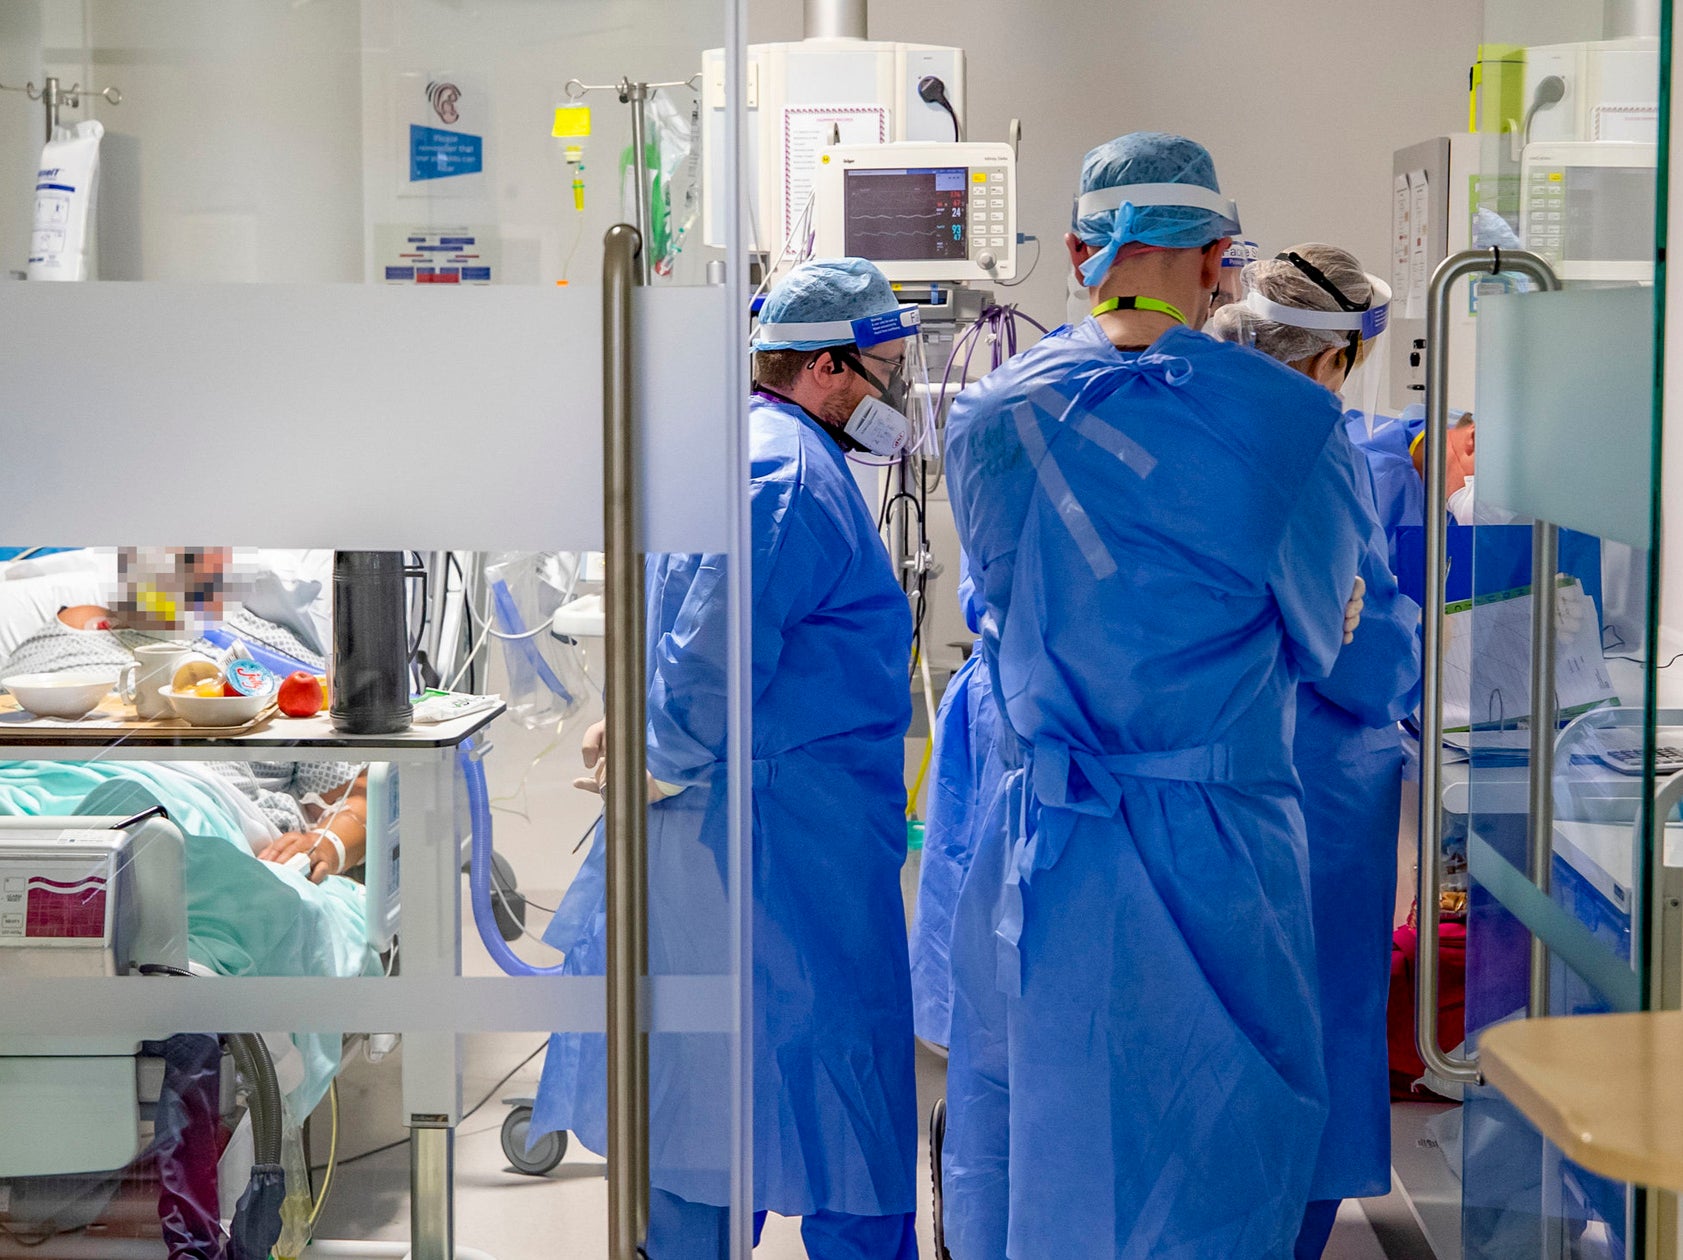 Los trabajadores de la salud que usan equipo de protección personal completo (EPP) atienden a un paciente en la unidad de cuidados intensivos (UCI) del Hospital Whiston en Merseyside